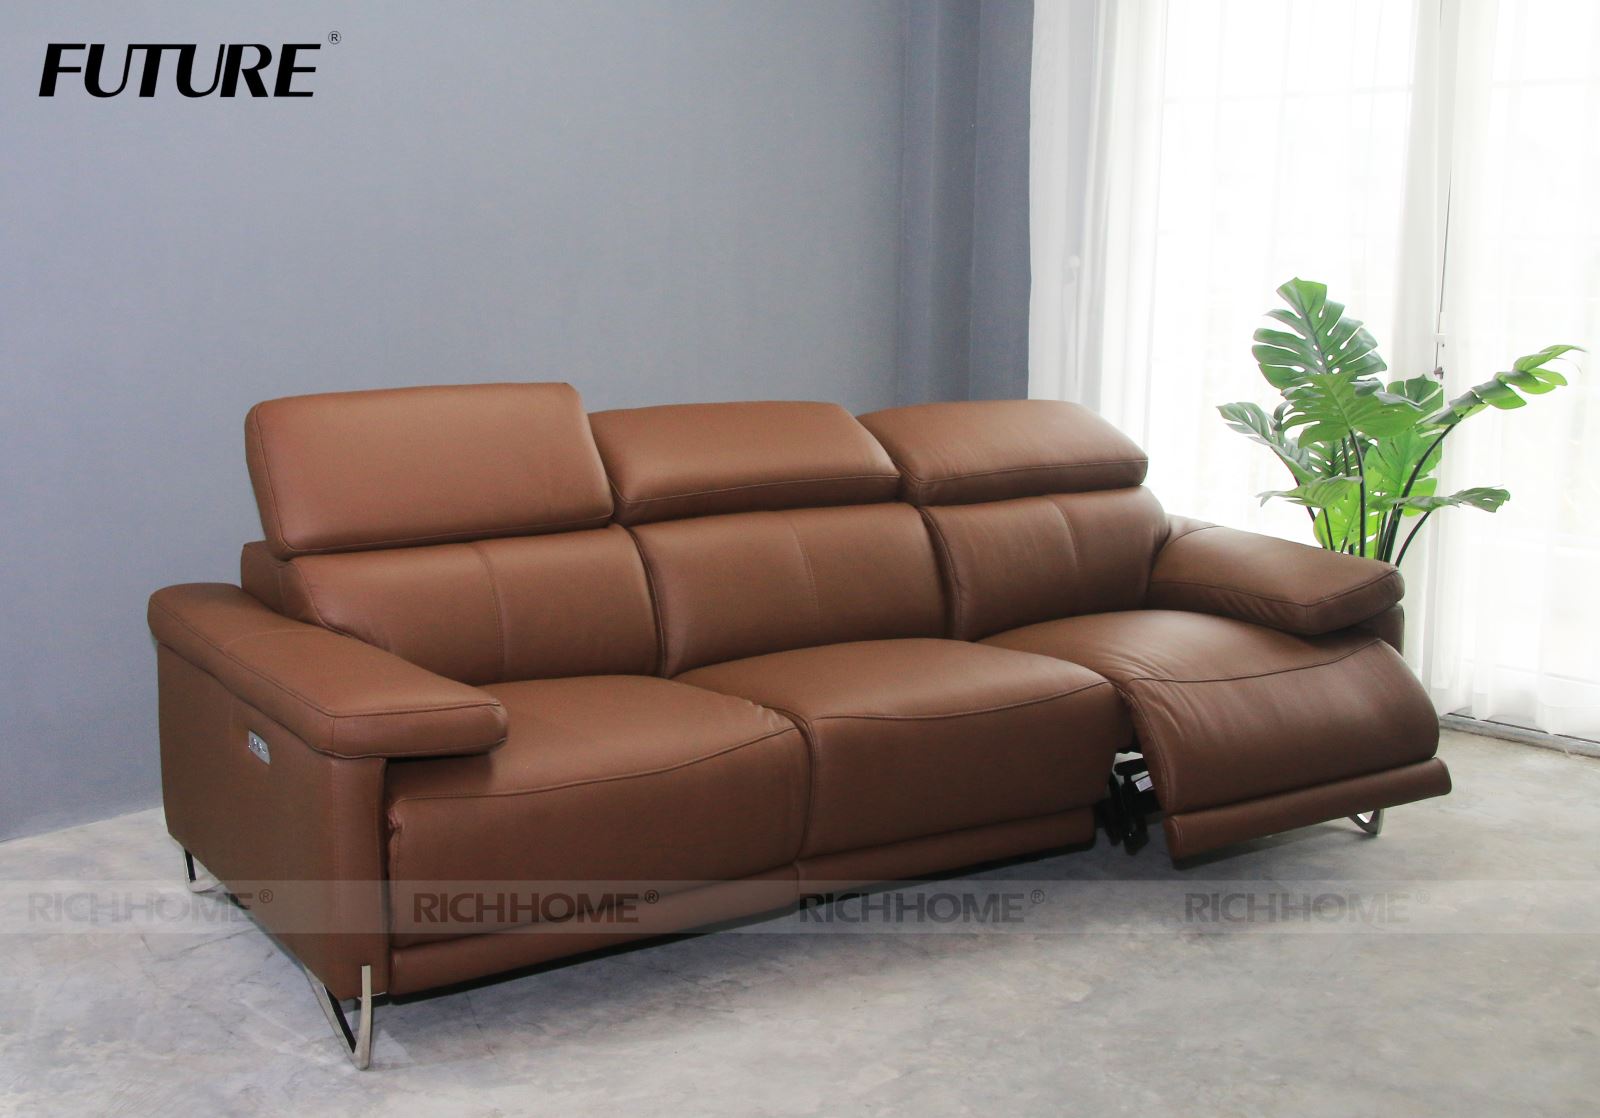 10 mẫu sofa nhập khẩu dạng văng 3 lòng ngồi nên mua ngay - Ảnh 3